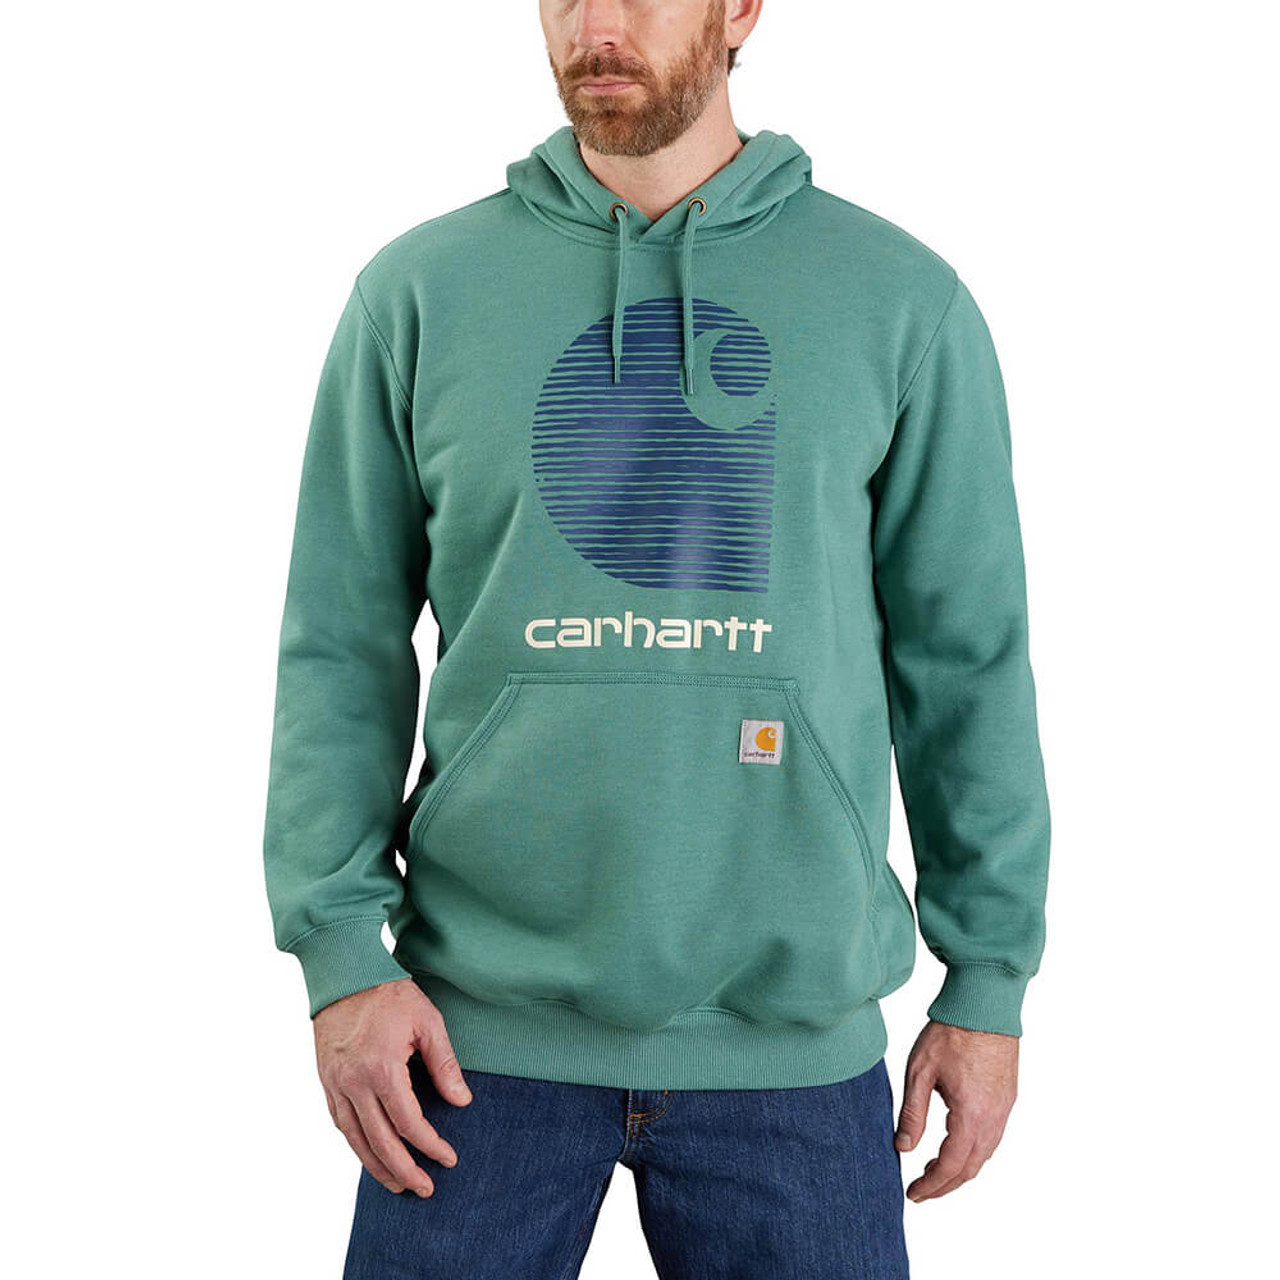  Carhartt : Hoodies & Sweatshirts